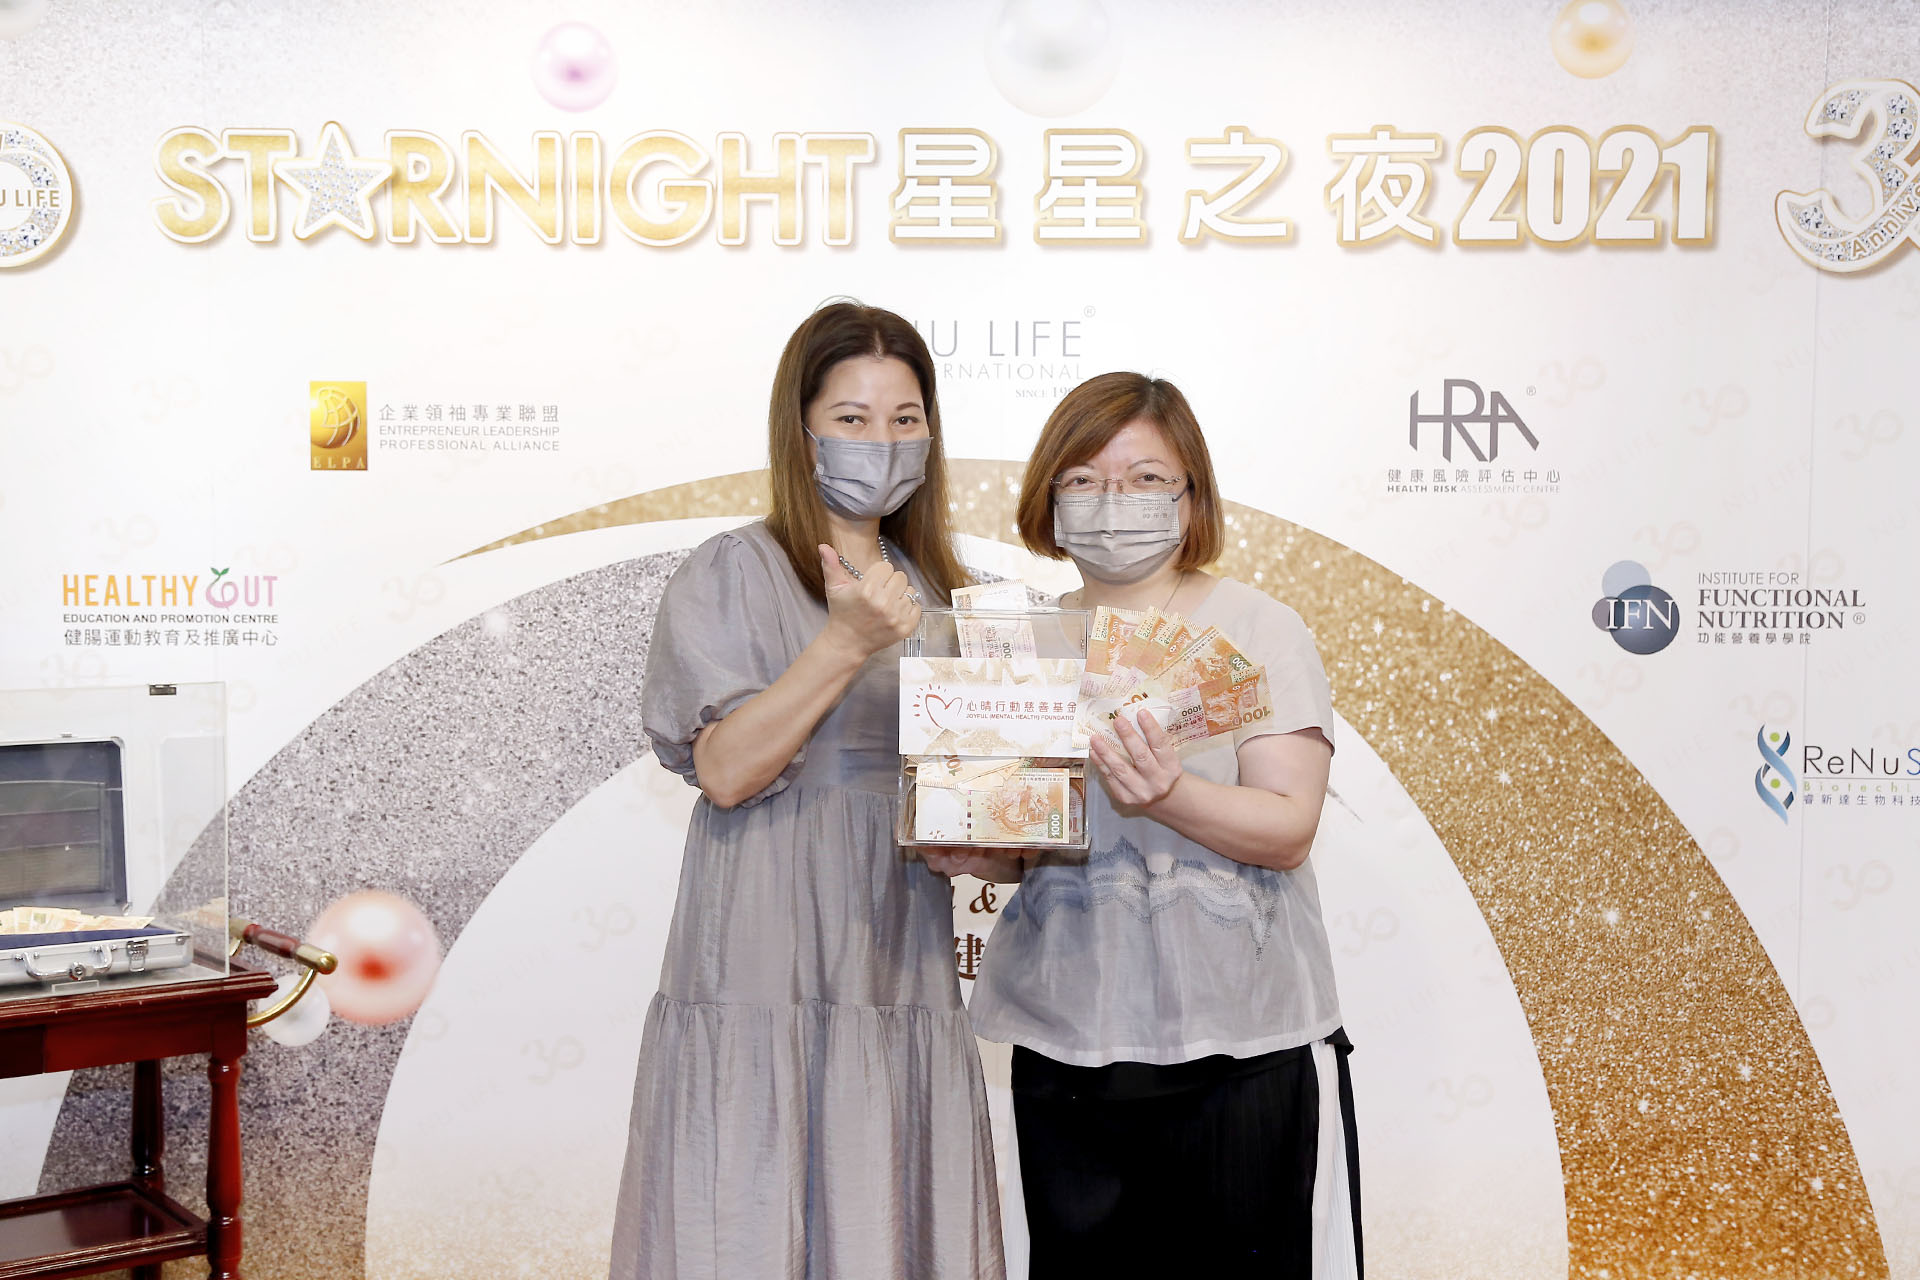 恭賀萬寧小姐從星級百萬富翁遊戲贏取HK$10,000獎金並與公司合共捐助HK$8000予「心晴行動慈善基金」